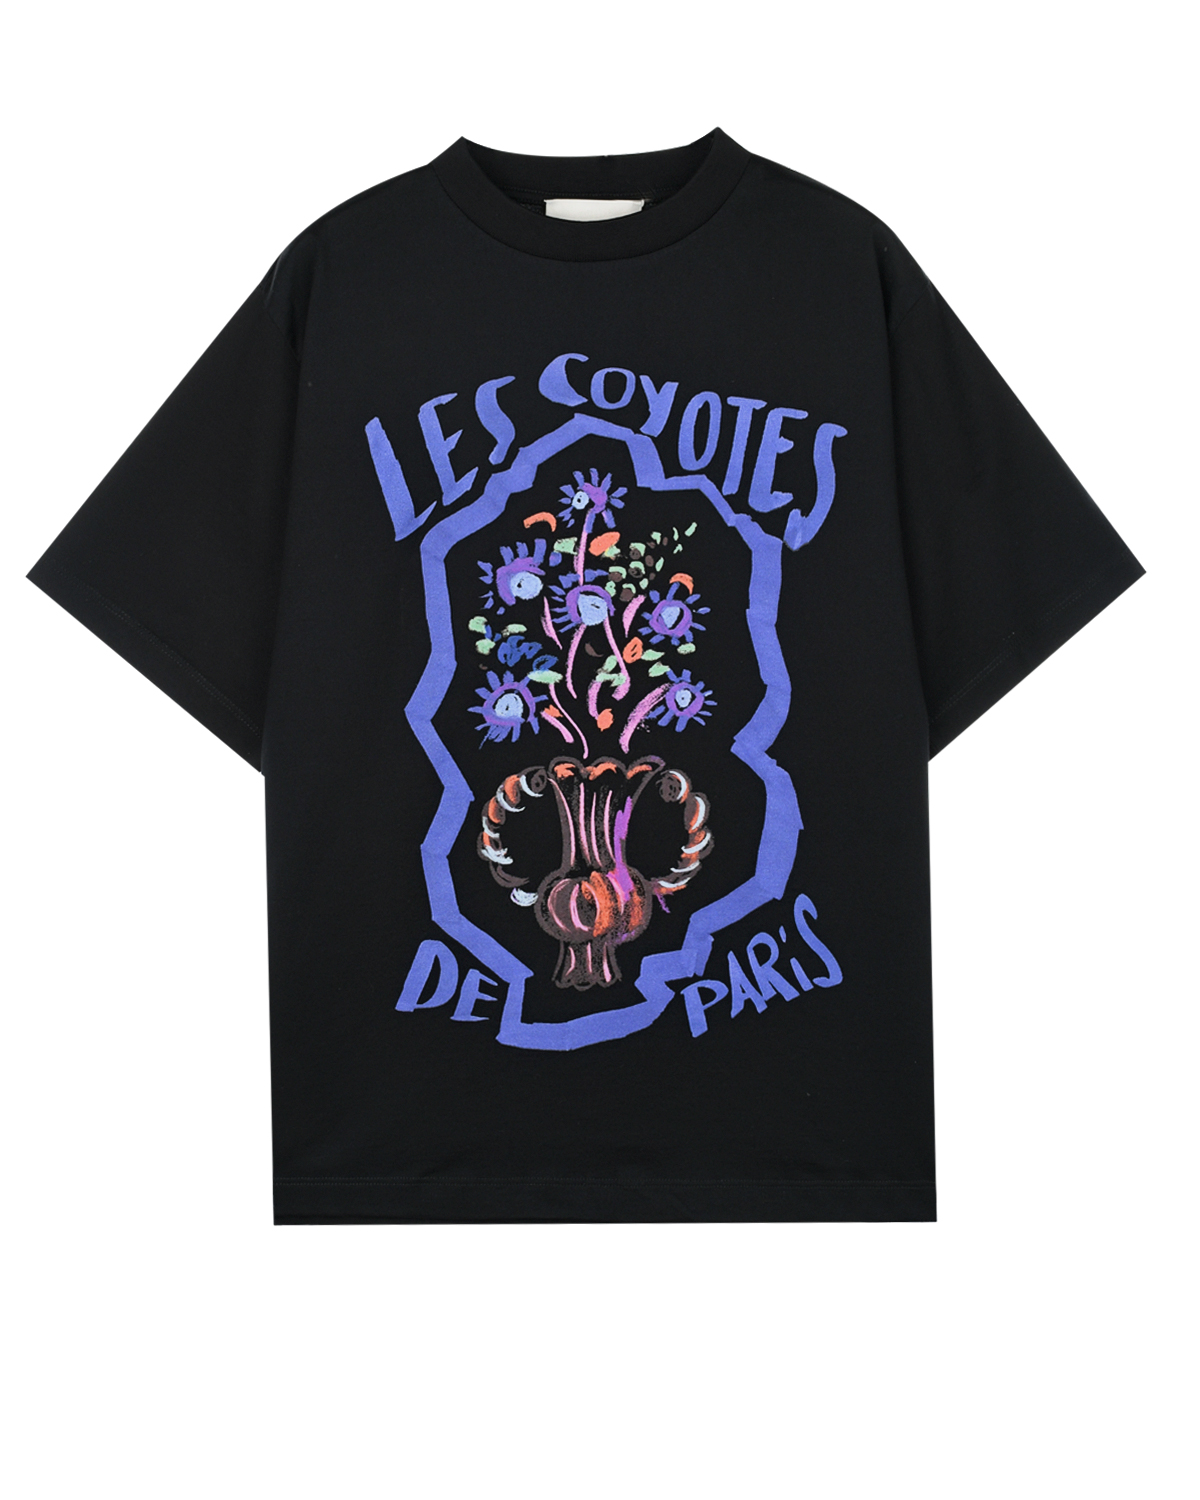 Черная футболка с принтом "ваза с цветами" Les Coyotes de Paris детская, размер 152 - фото 1